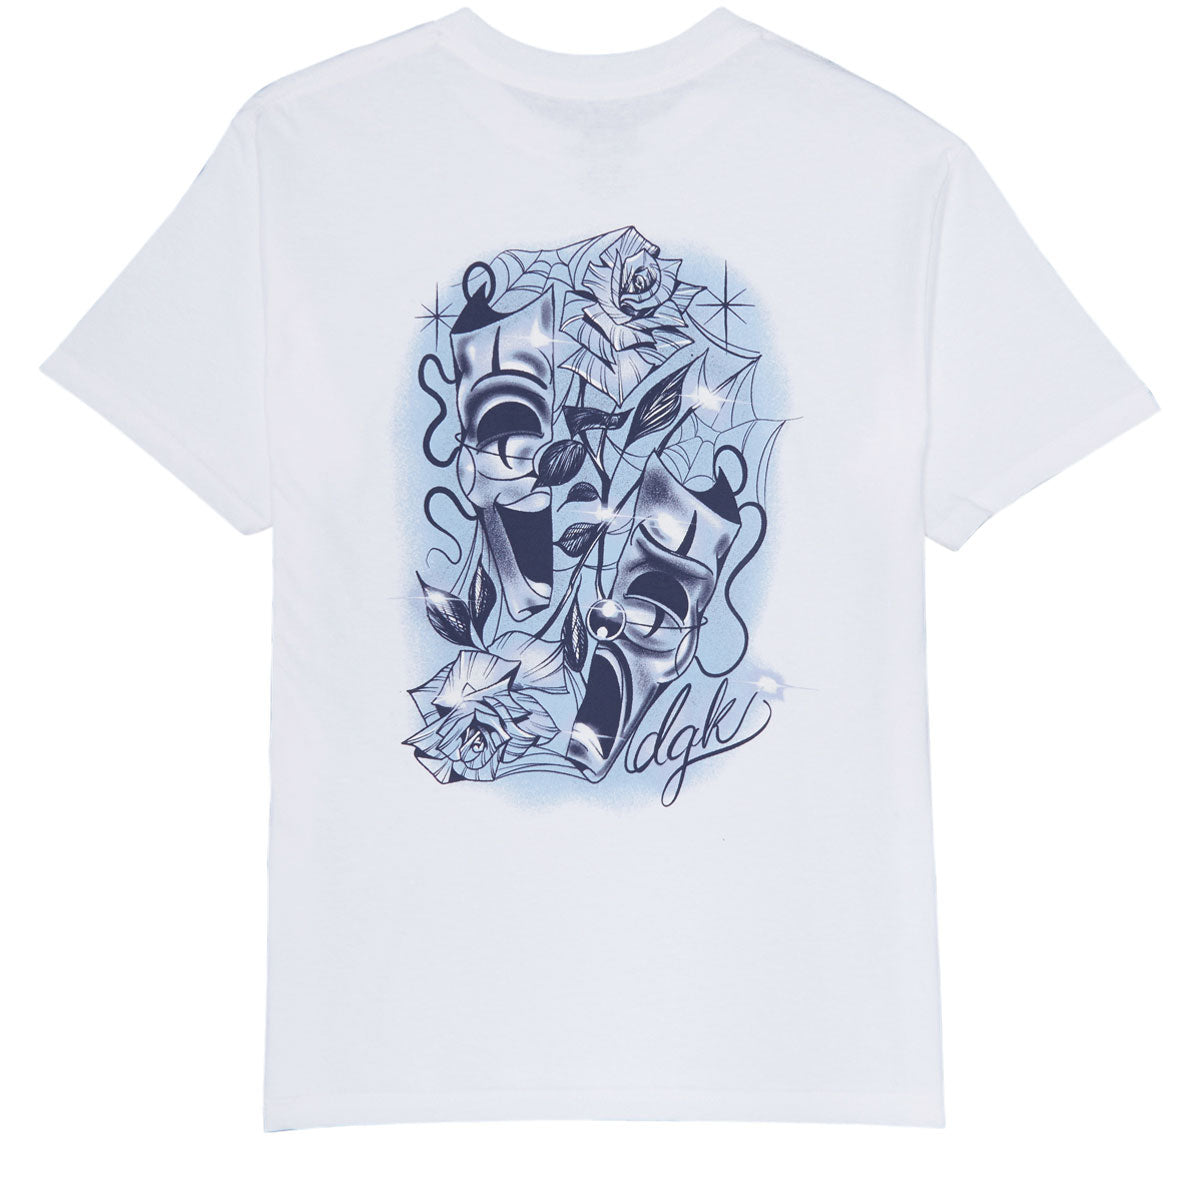 DGK Split T-Shirt - White image 1